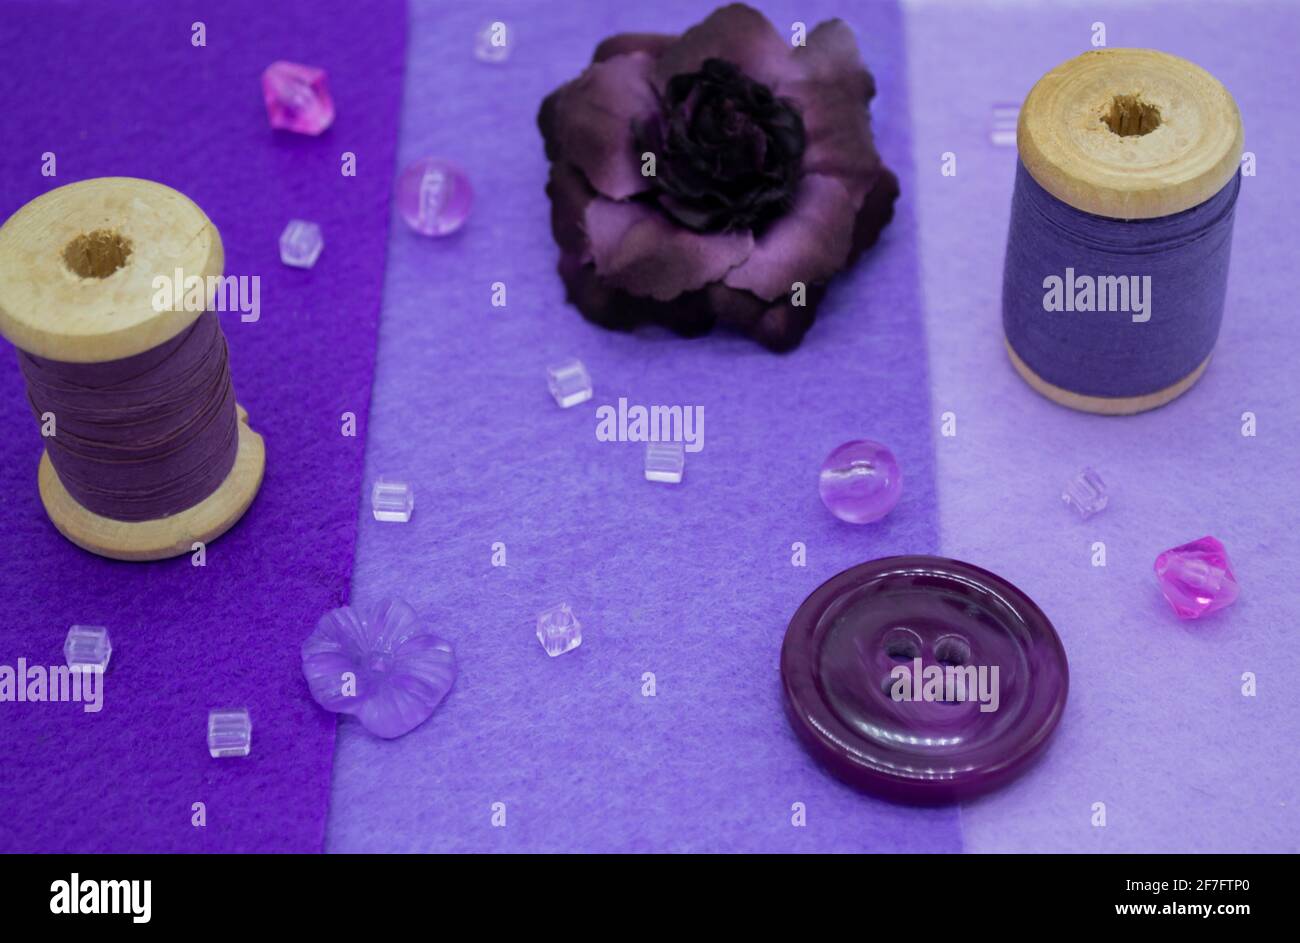 Articoli da cucire viola: Feltro in tre tonalità di lilla, bobine di legno con filo, perline, bottoni, e una rosa viola. Foto Stock